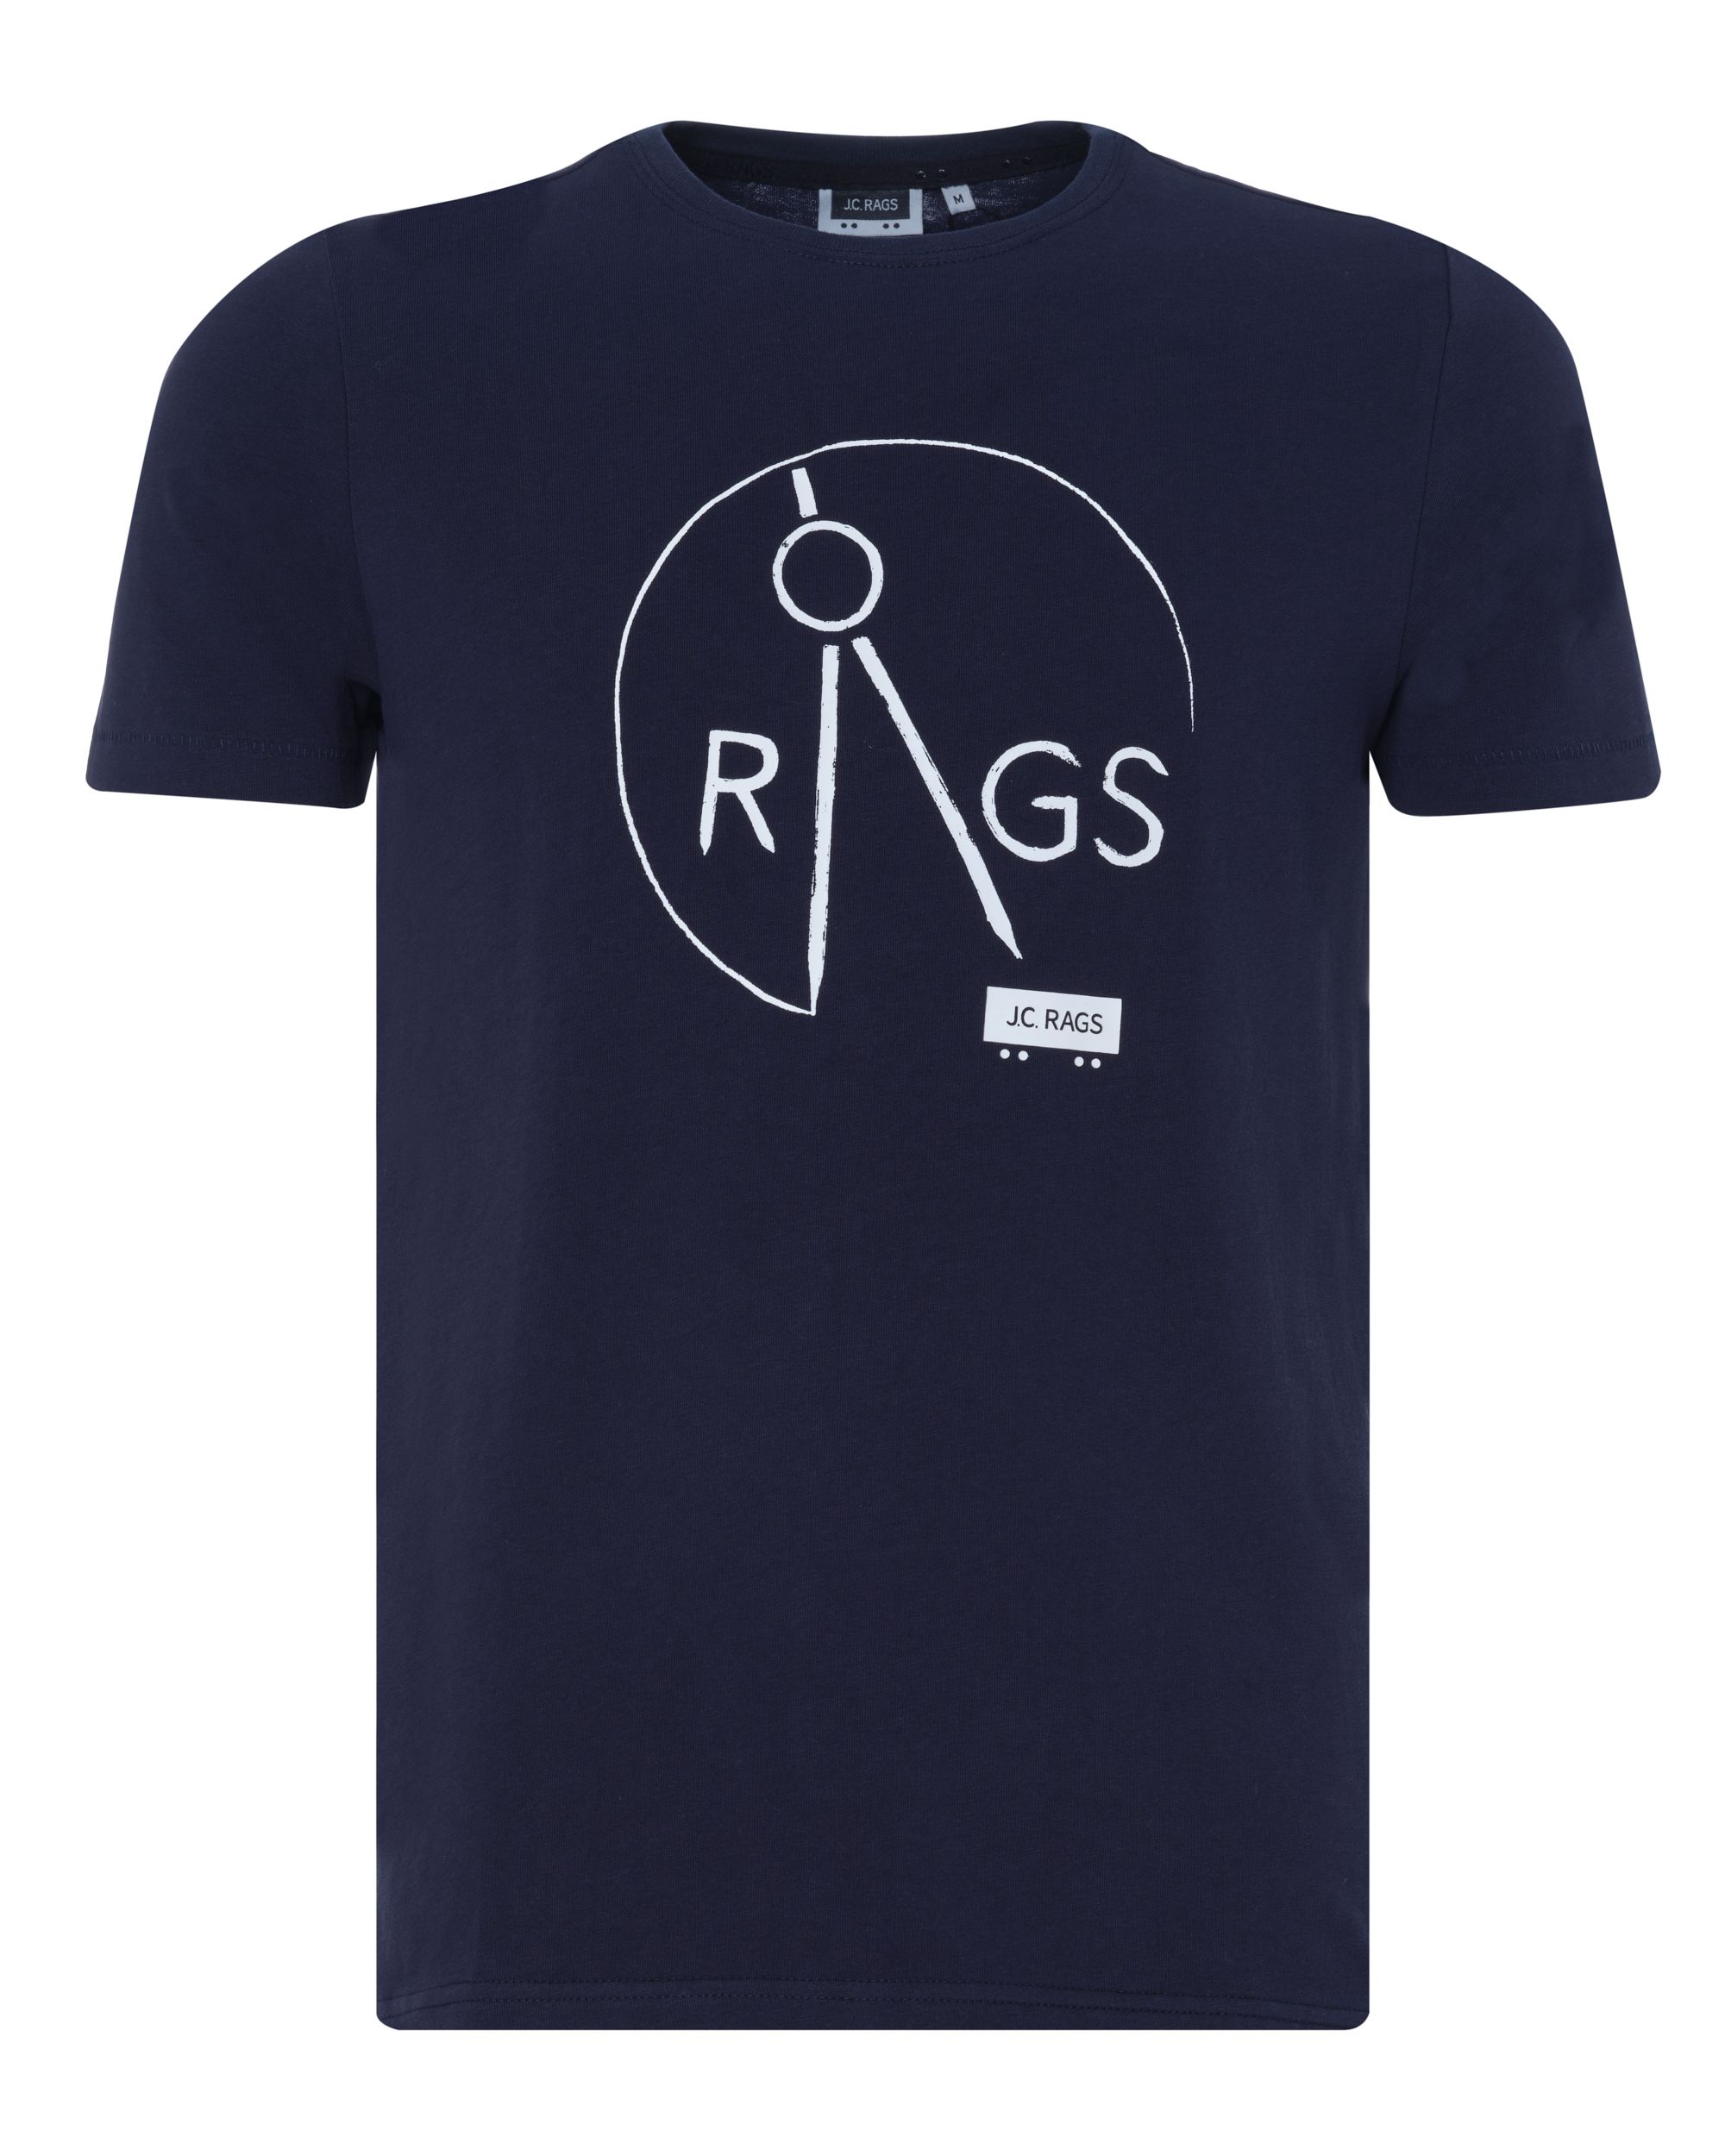 J.C. RAGS Chiel T-shirt KM Navy uni 073955-002-L